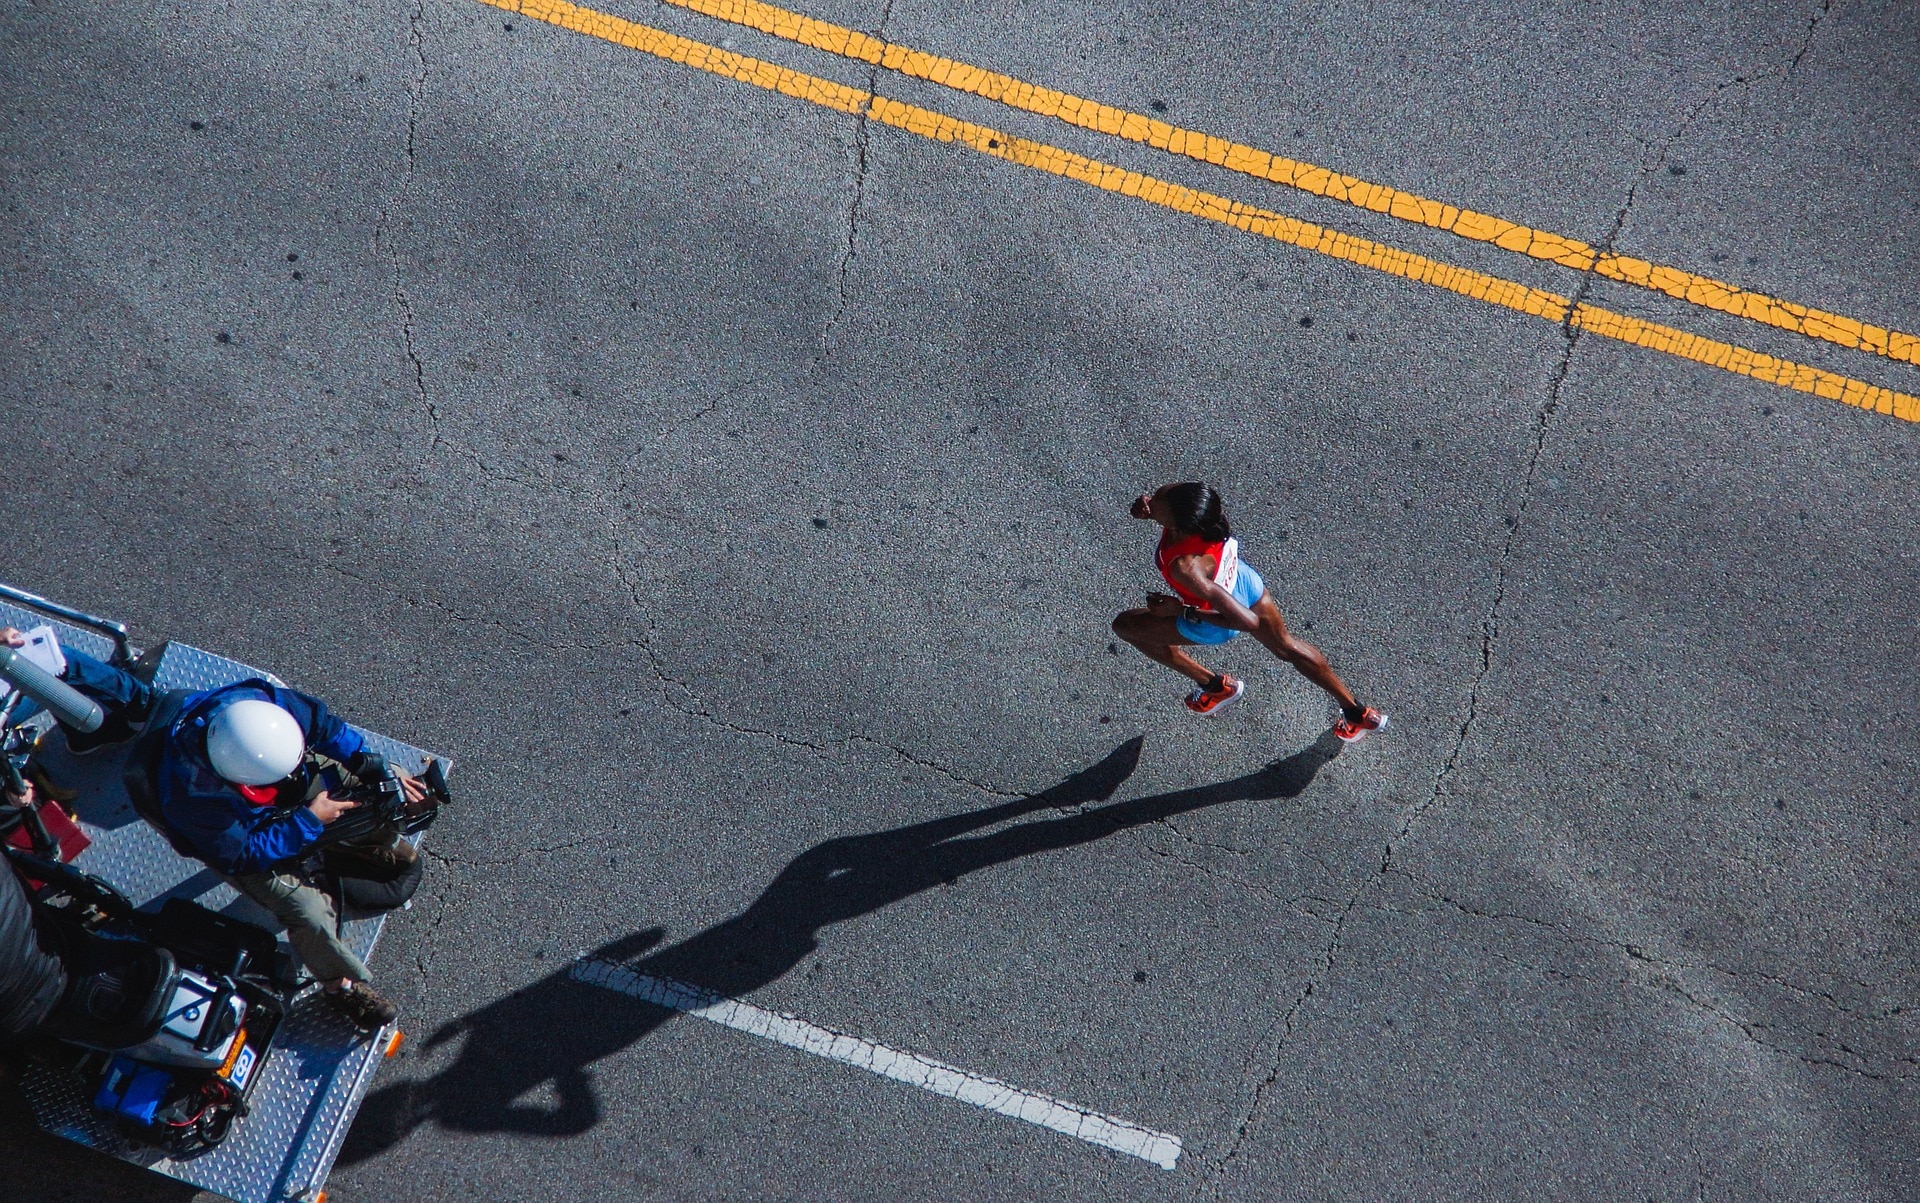 A marathon runner